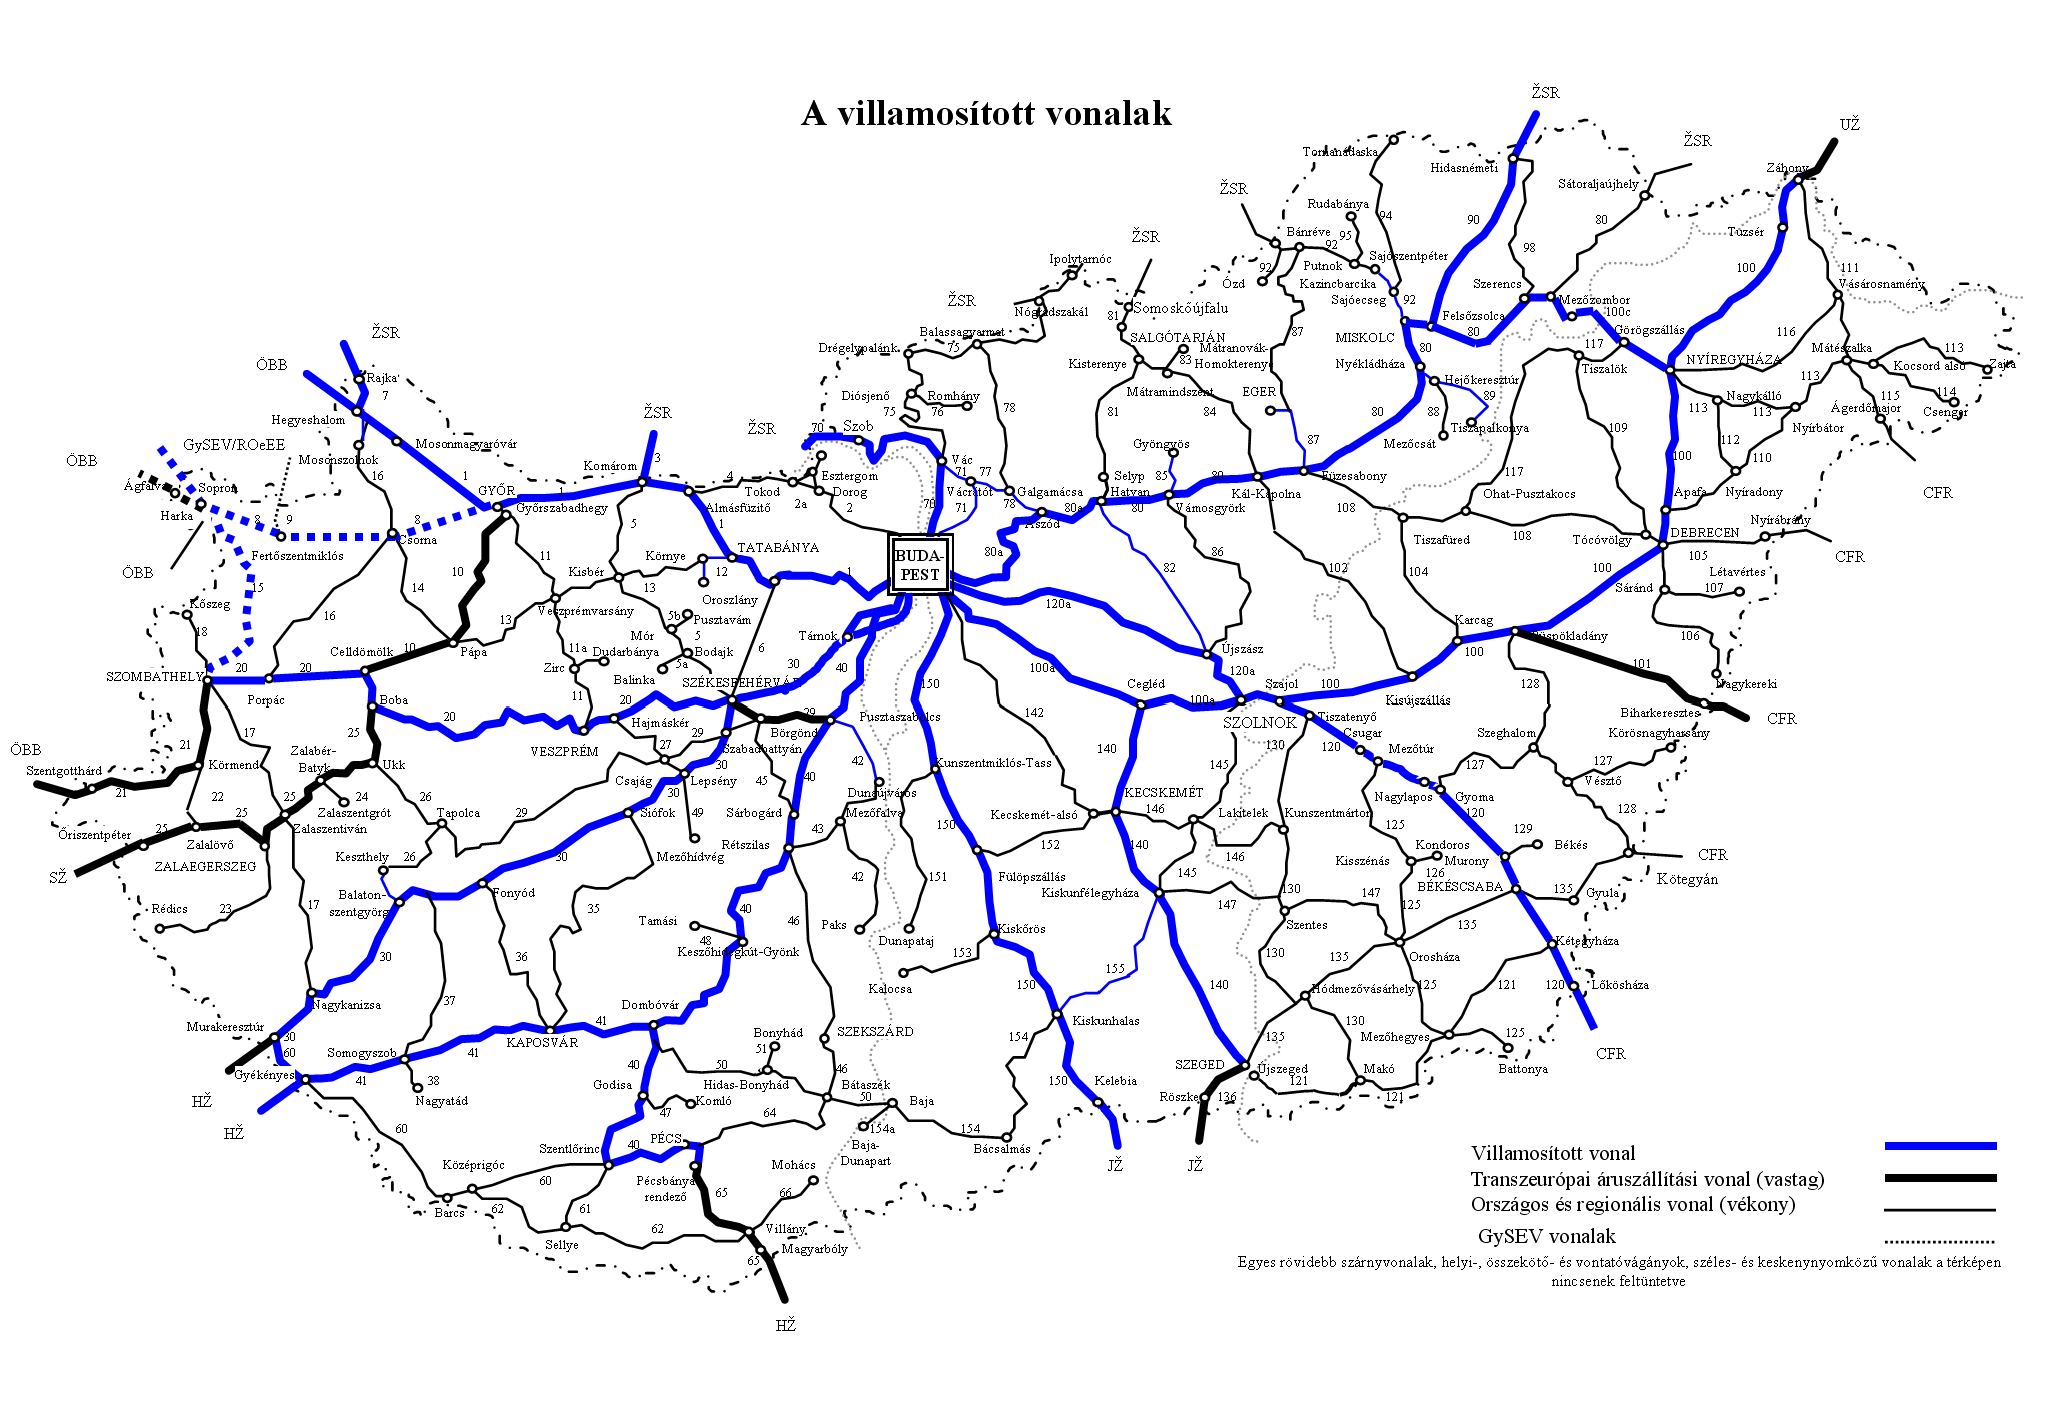 magyarország vasúthálózata térkép Vasúti térképek   Magyarország vasútállomásai és vasúti megállóhelyei magyarország vasúthálózata térkép